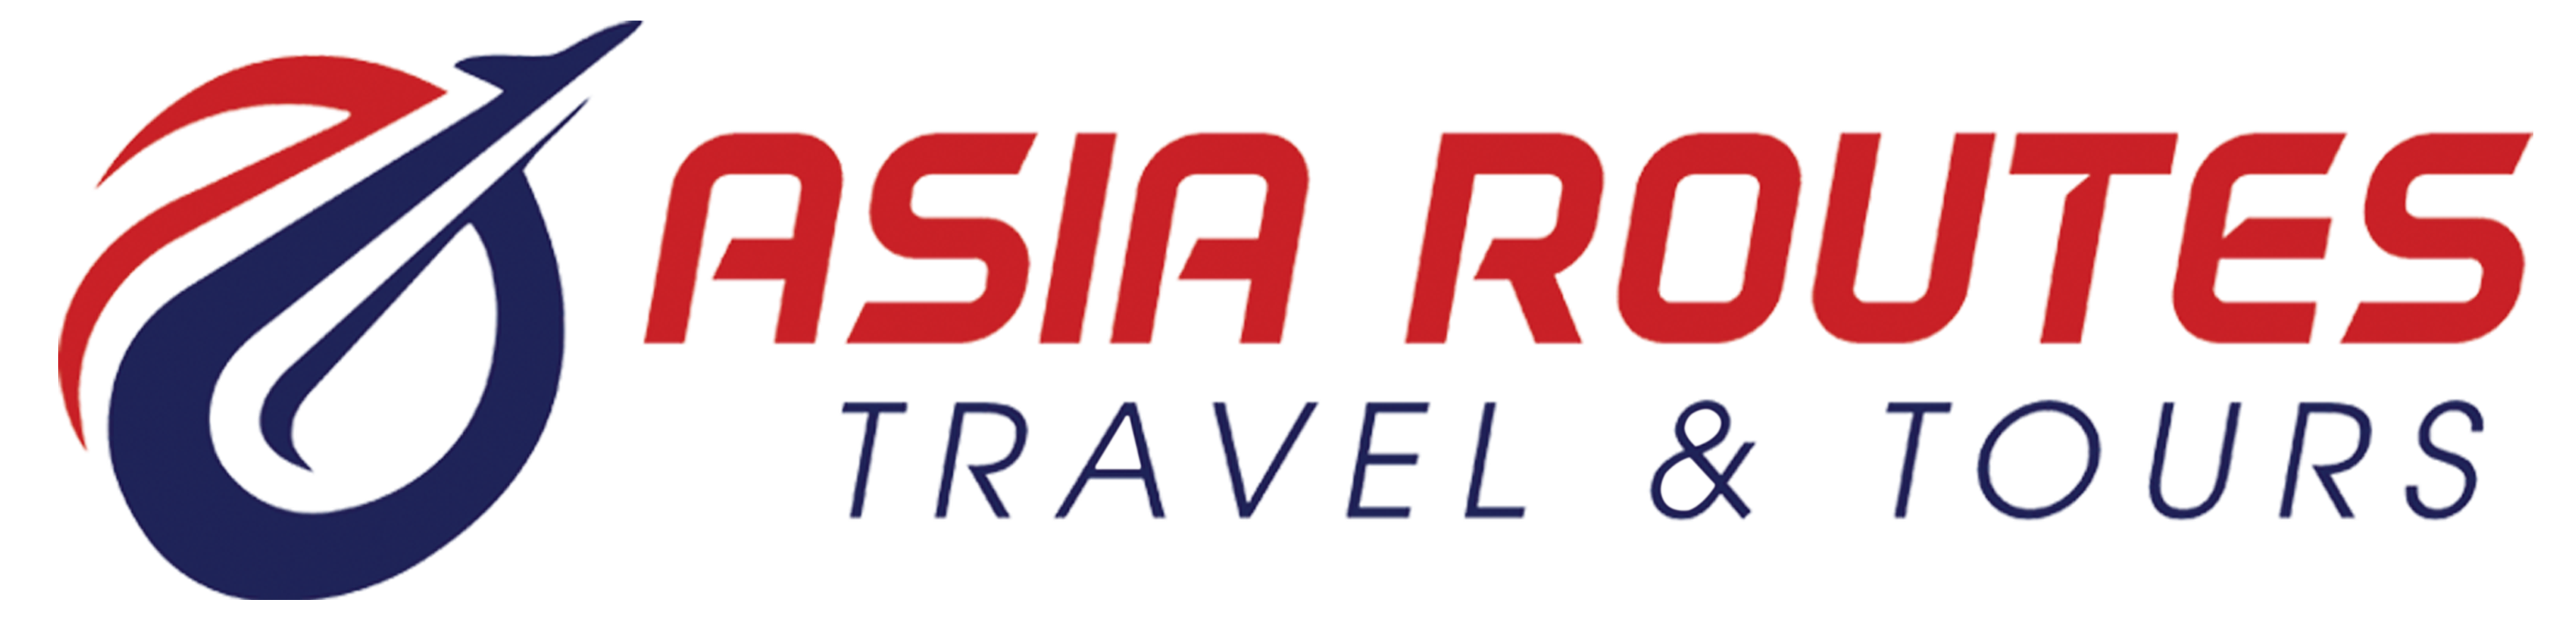 Asia Routes Travel & Tours |   FAQ